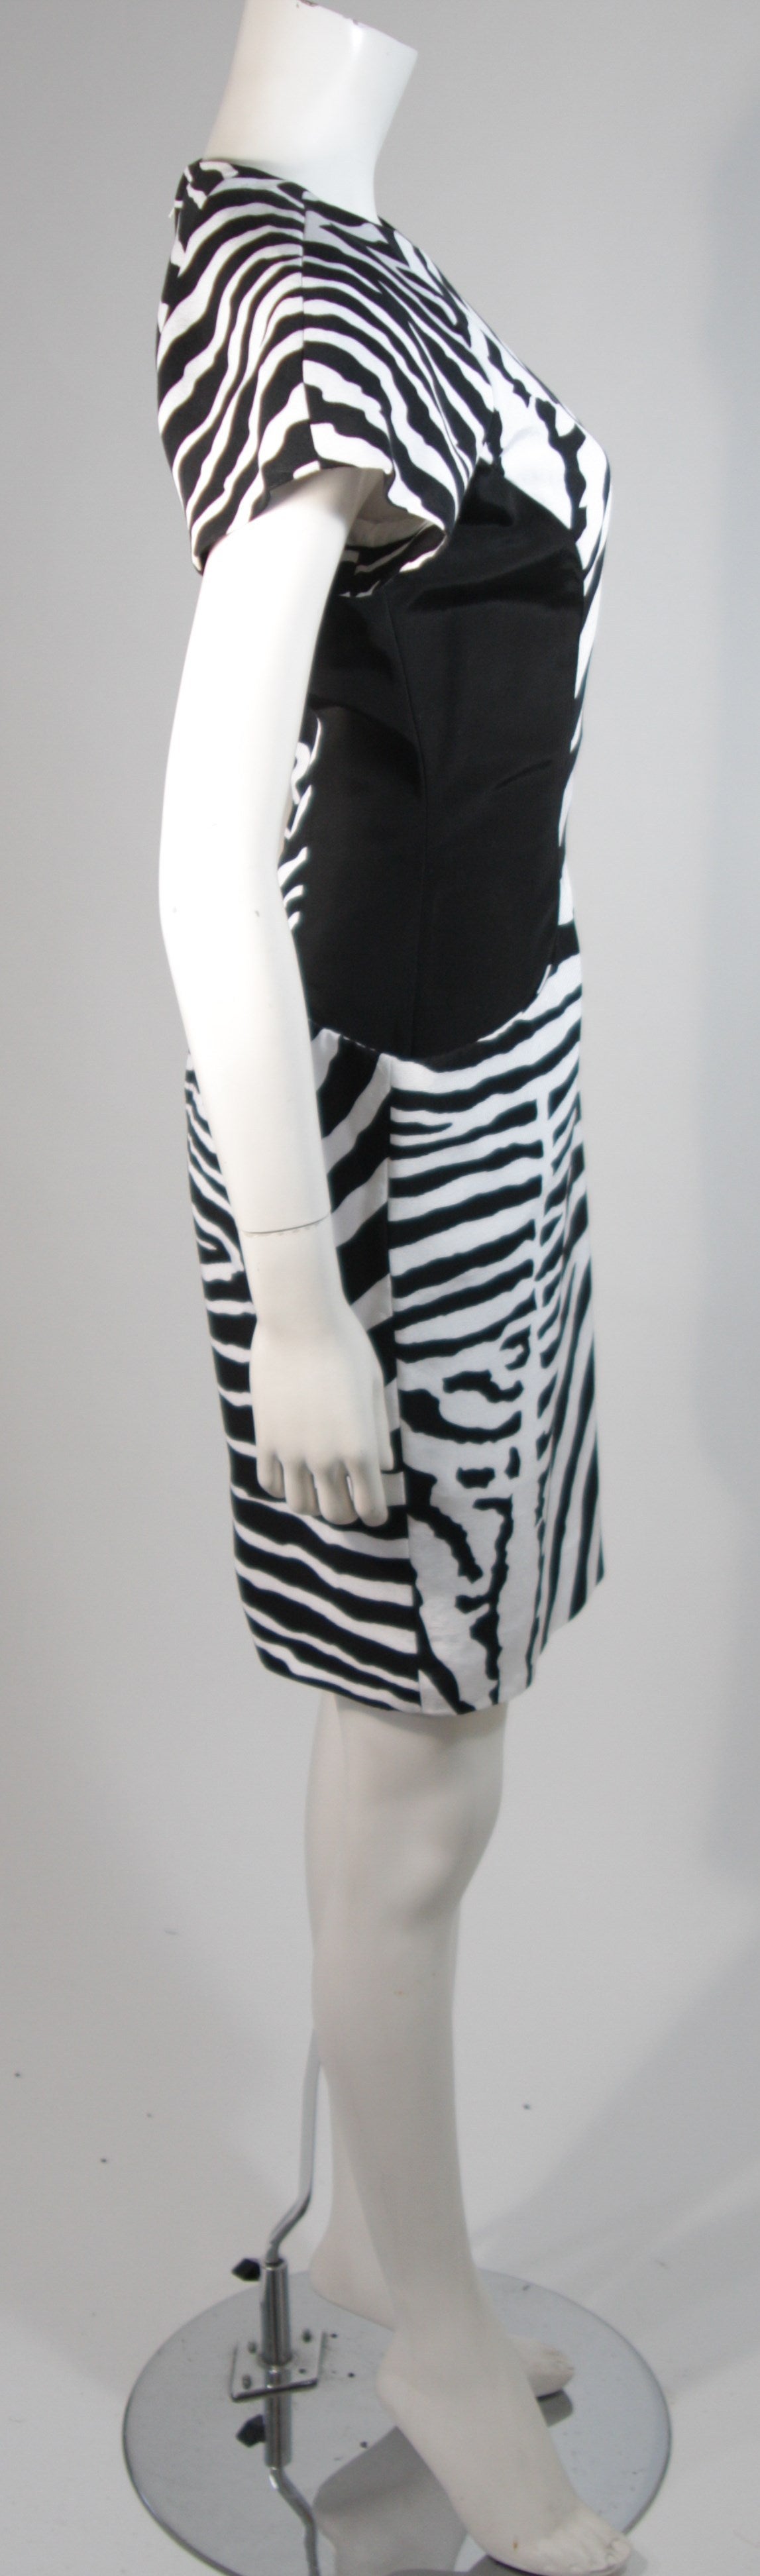 Vicky Tiel Black and White Zebra Patterned Cocktail Dress Size Small 2